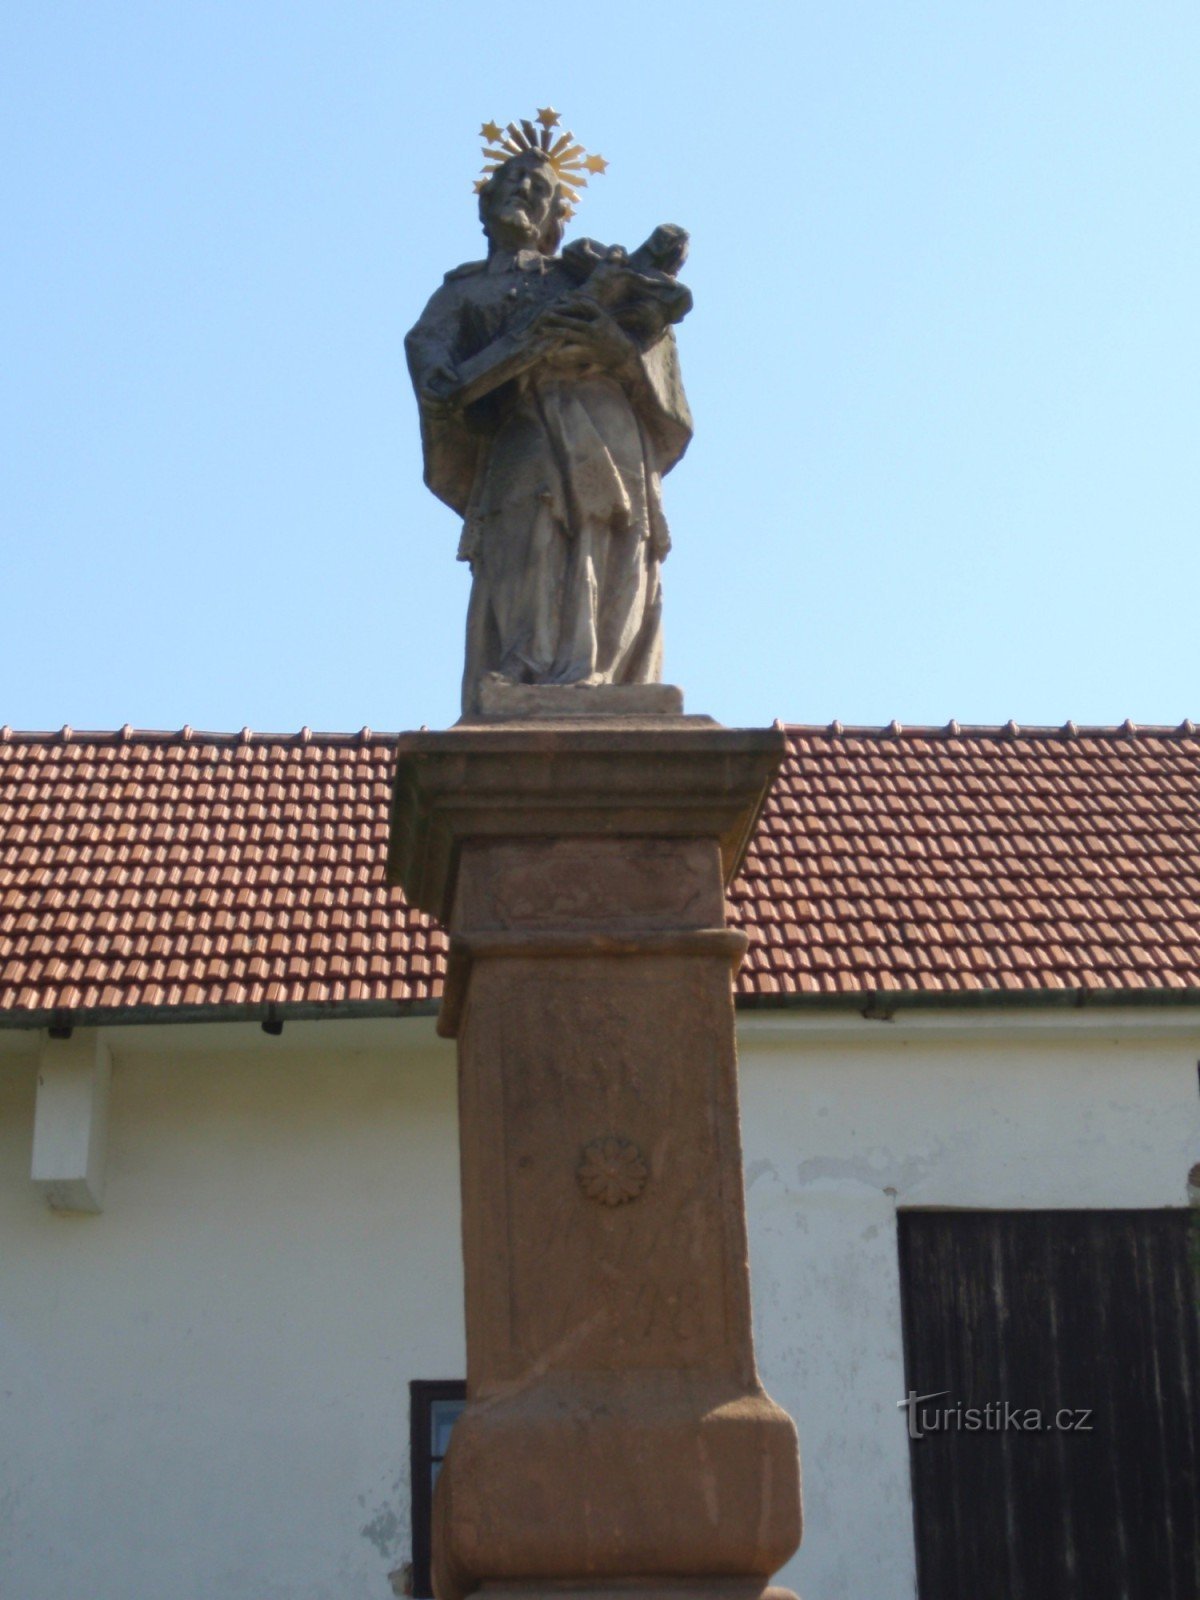 聖の像ボリトフのヤン・ネポムツキー